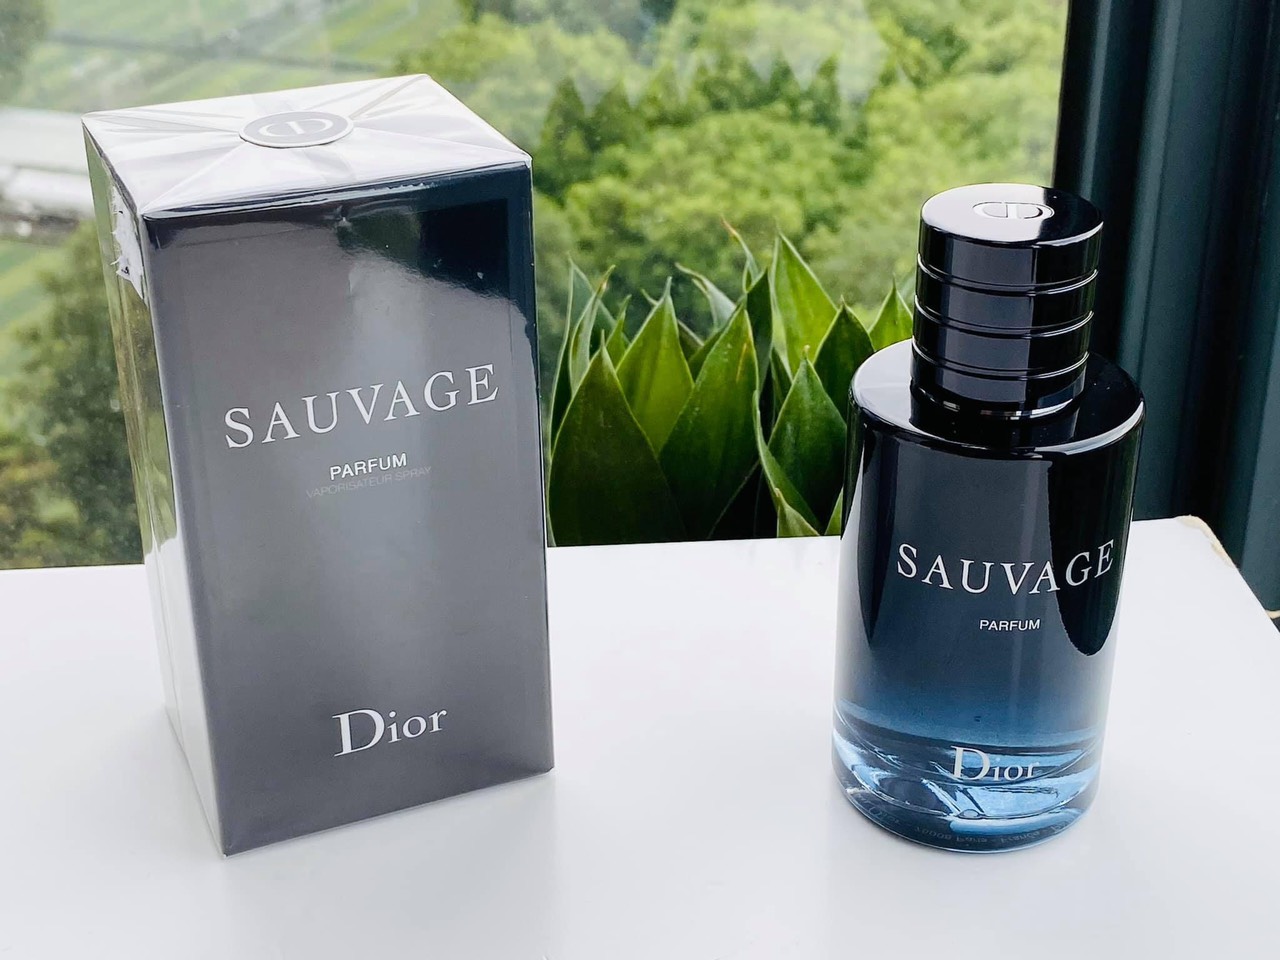 Nước hoa nam Dior Sauvage Parfum 100ml  Tester Mỹ phẩm Minh Thư  Hàng  ngoại nhập 1